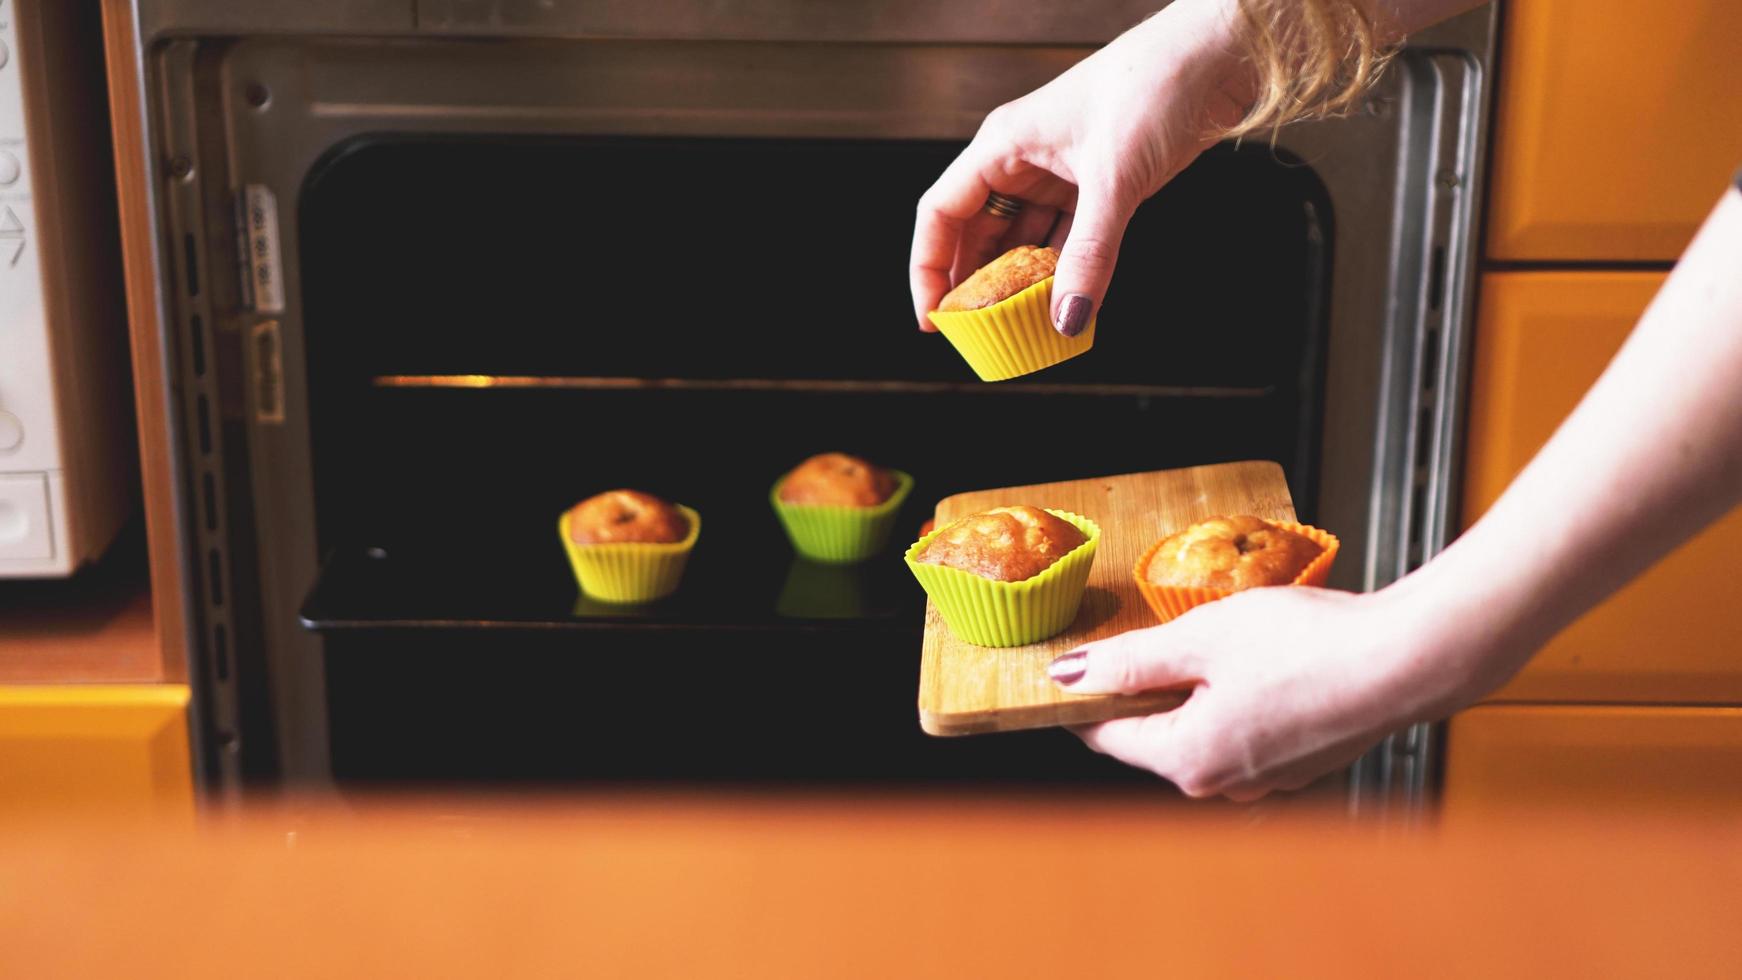 muffin ravvicinati pronti per uscire dal forno elettrico foto